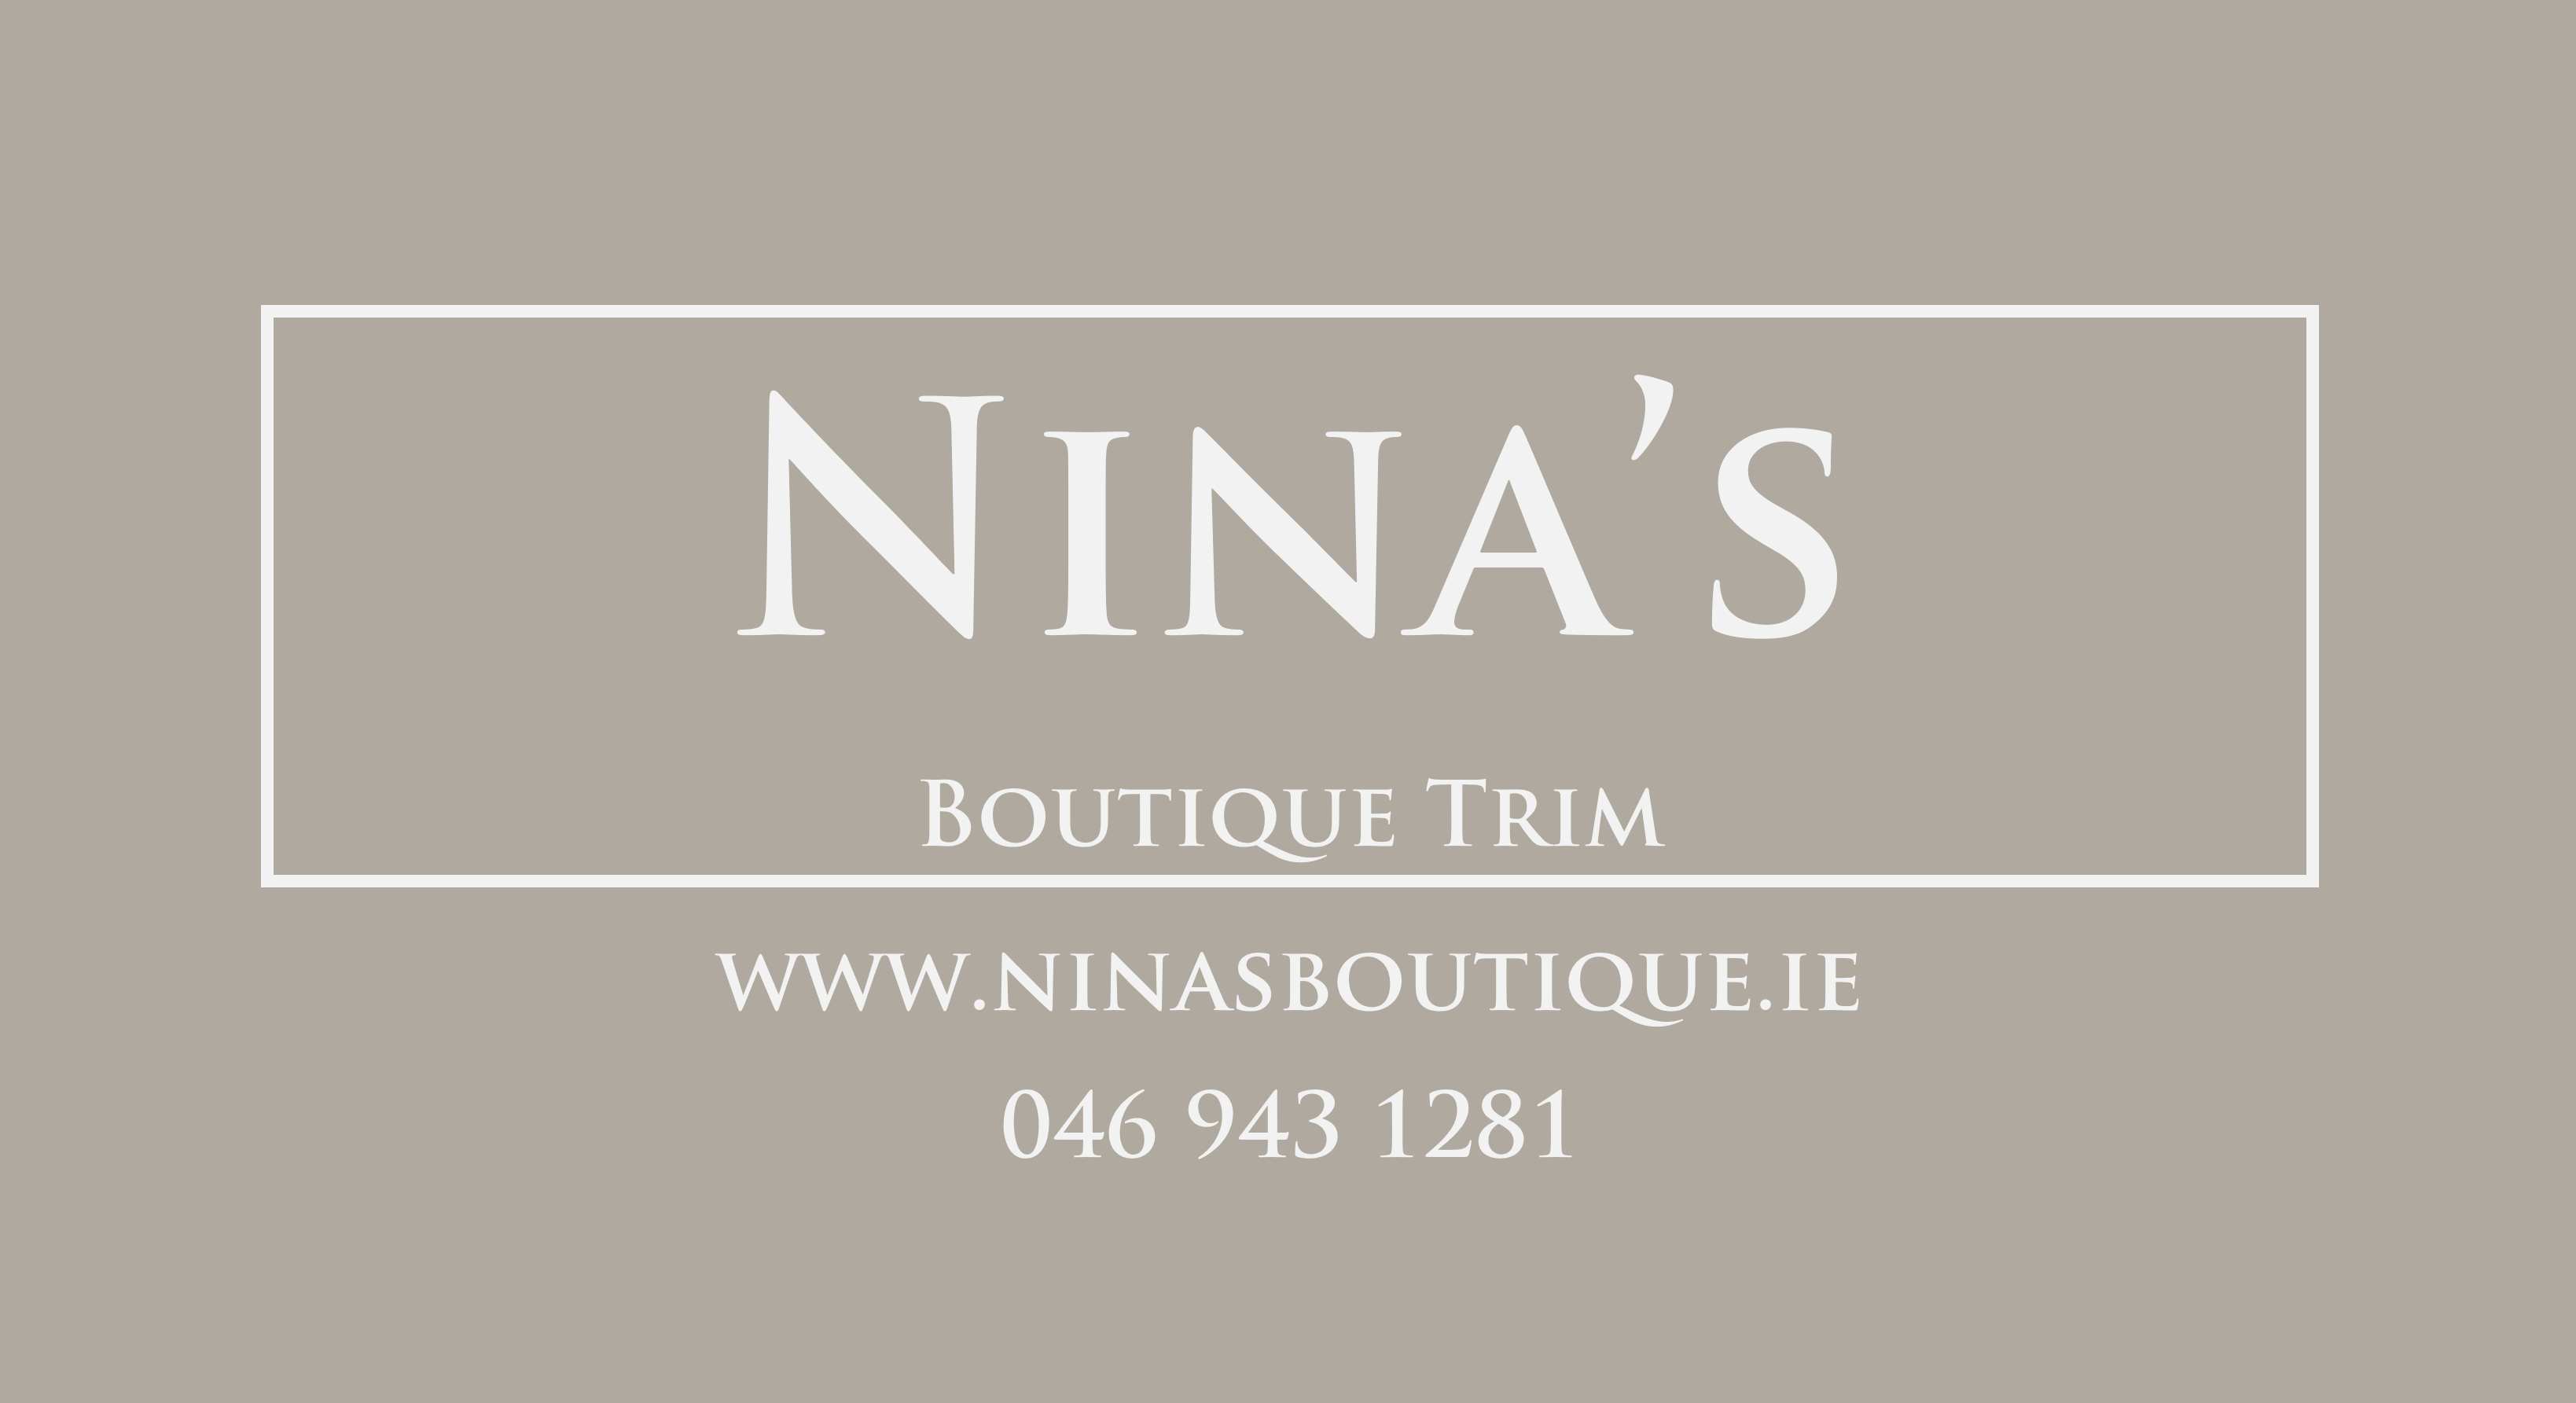 Nina's Boutique